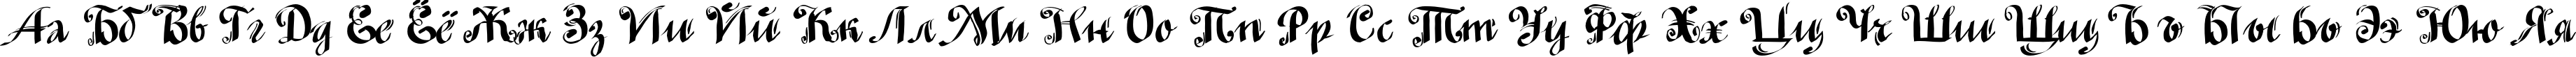 Пример написания русского алфавита шрифтом MinusmanC